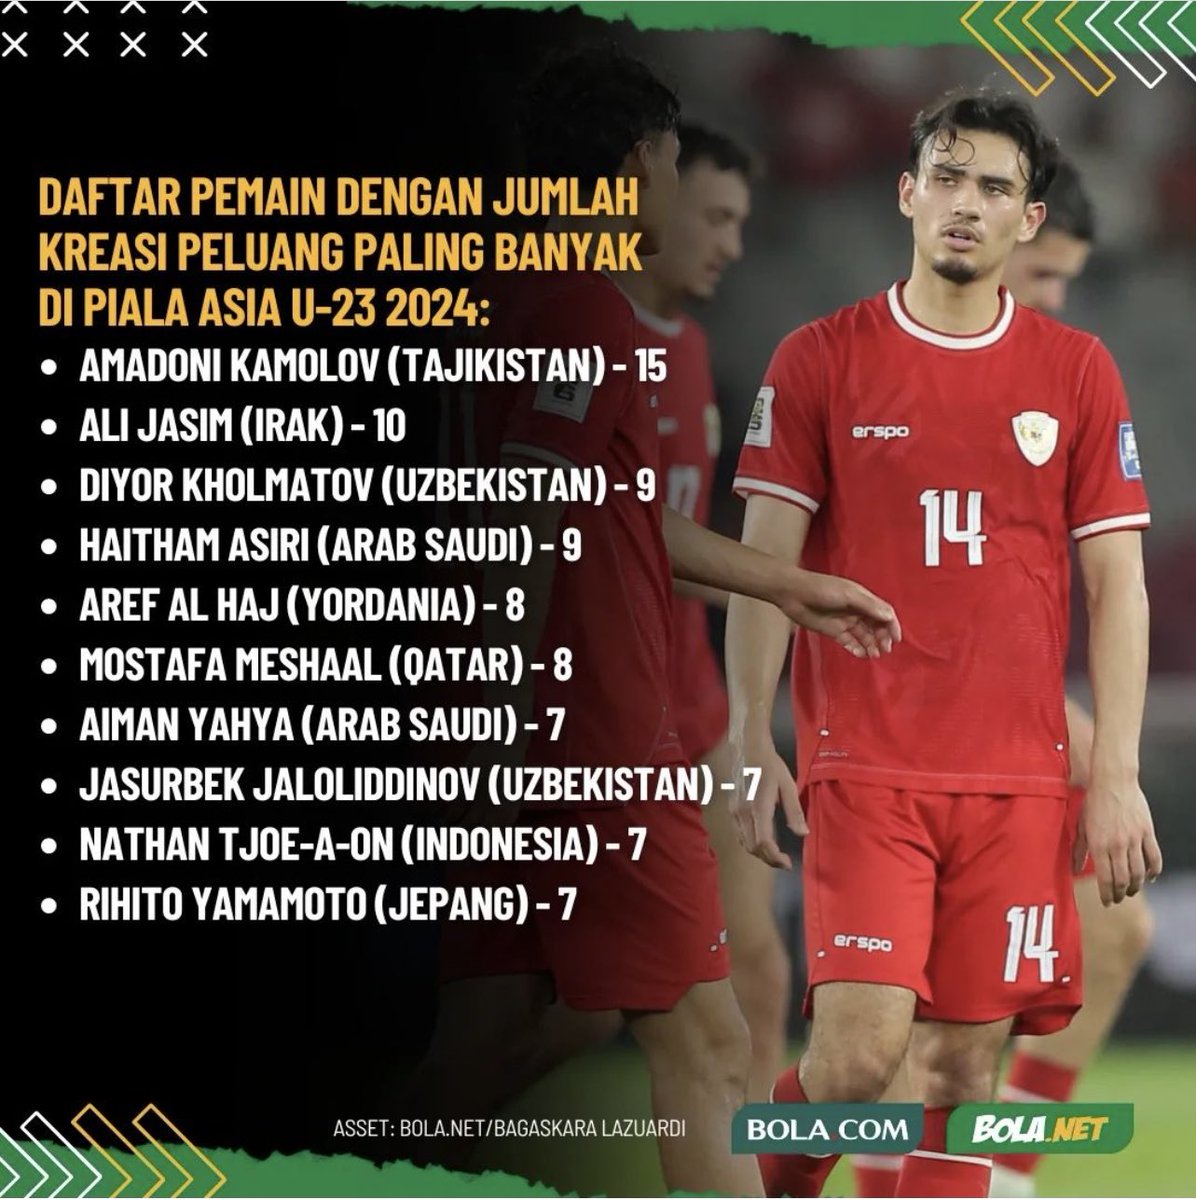 Ada siapa tuh? 10 pemain yg bikin kreasi peluang paling banyak di Piala Asia U23

Via @Bolanet @bolacomID